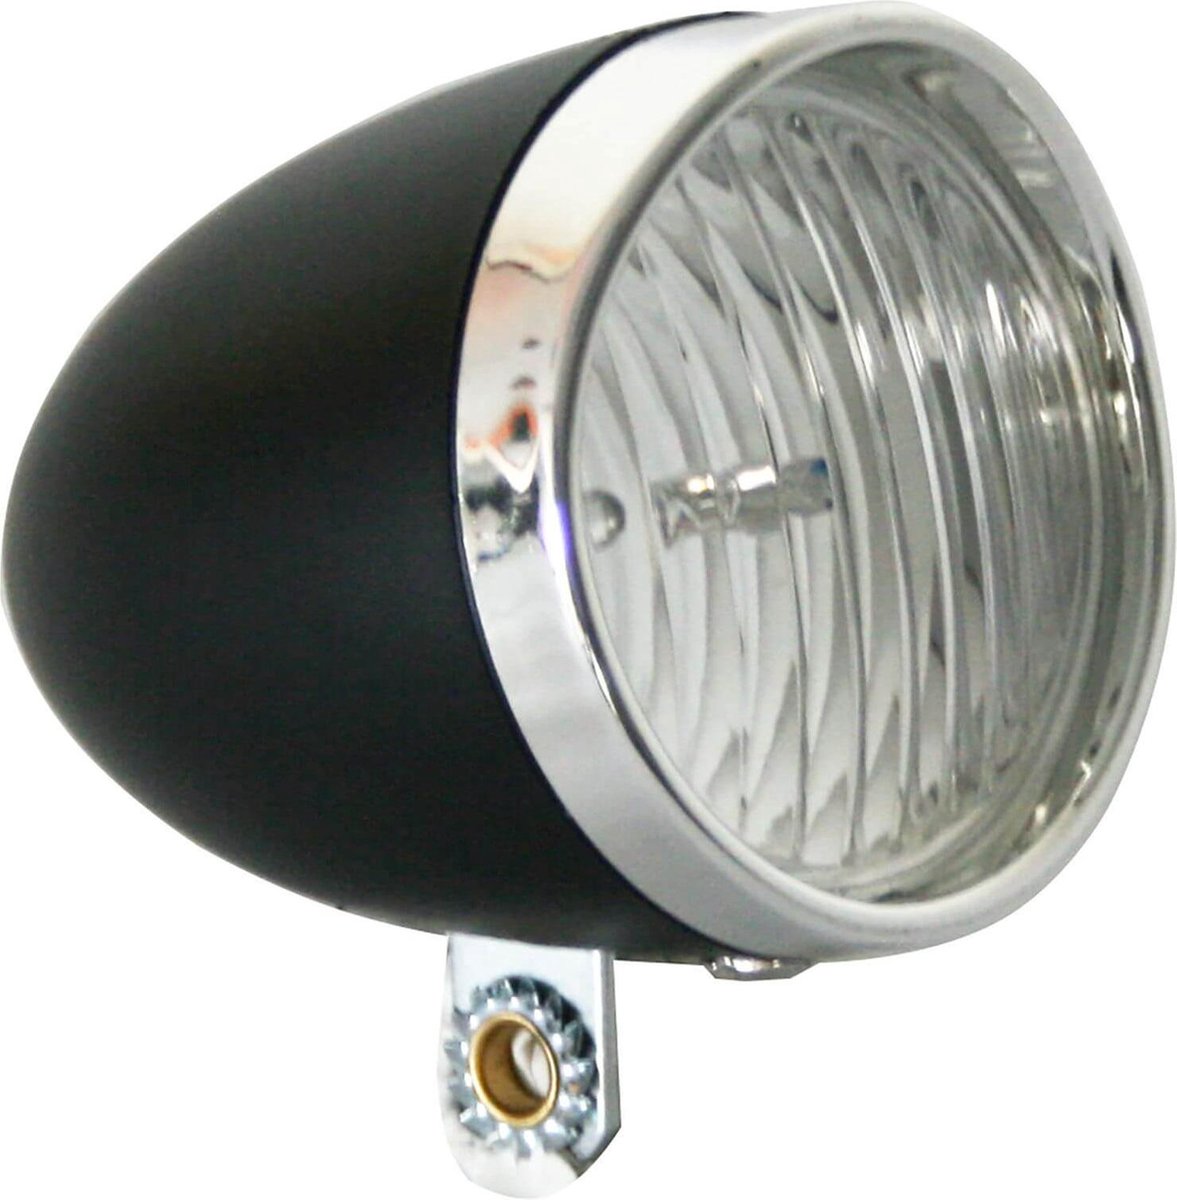 Ikzi Light Fietsverlichting LED - Voorlicht - Zwart - Ikzi Light